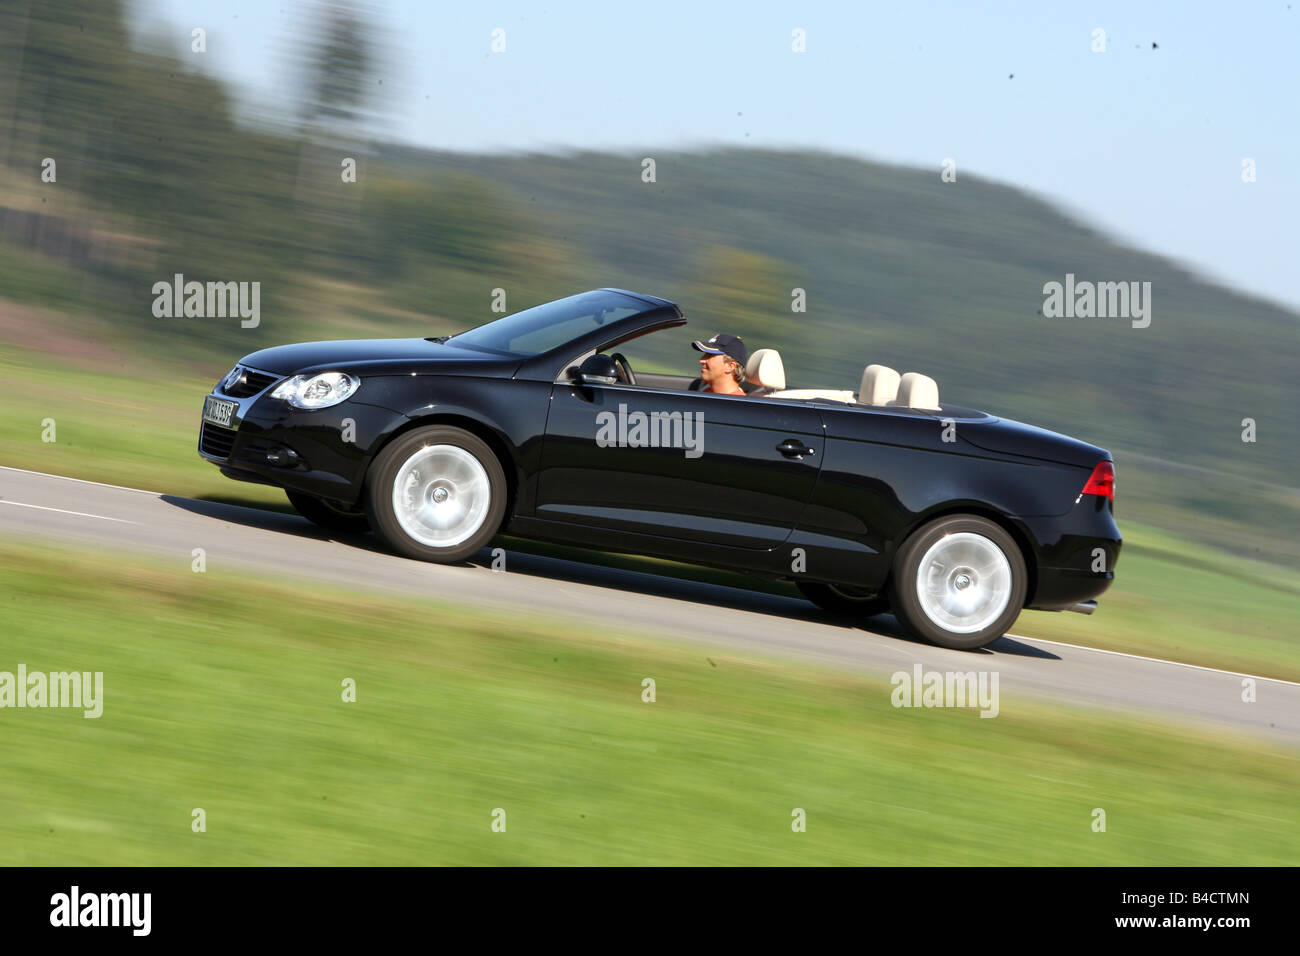 VW Volkswagen Eos 2.0 TFSI, modèle 2006-, noir, la conduite, la vue latérale, country road, open top Banque D'Images